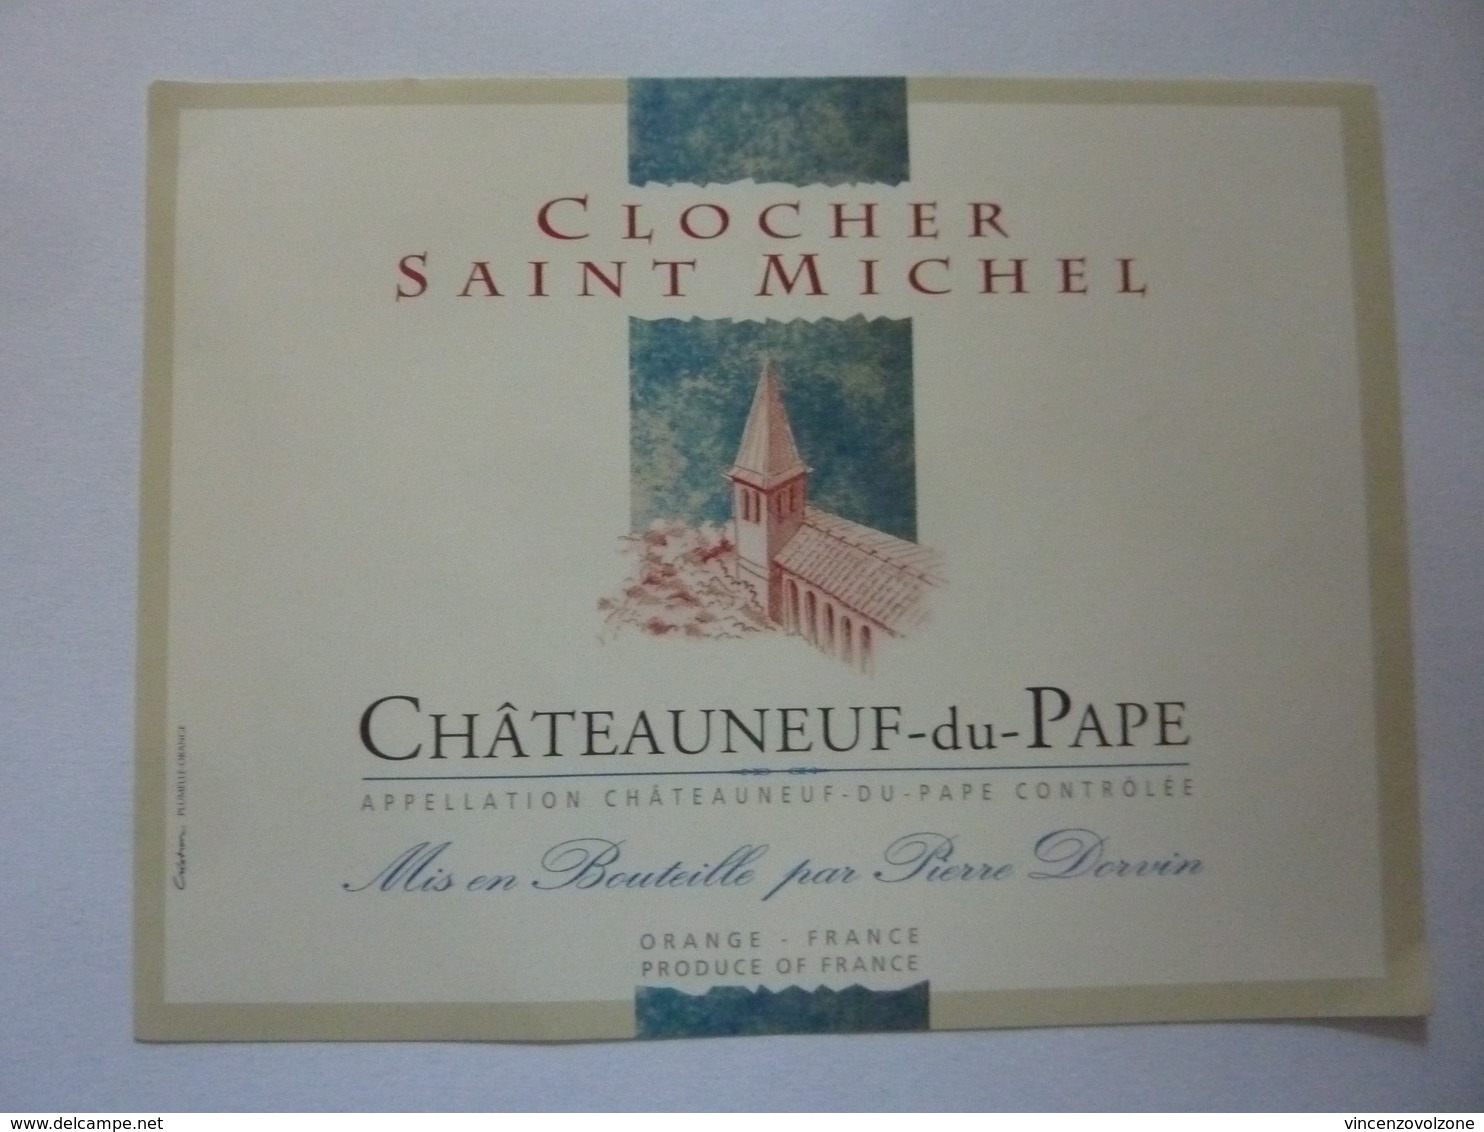 Etichetta "CLOCHER SAINT MICHEL CHATEAUNEUF DU PAPE" - Côtes Du Rhône